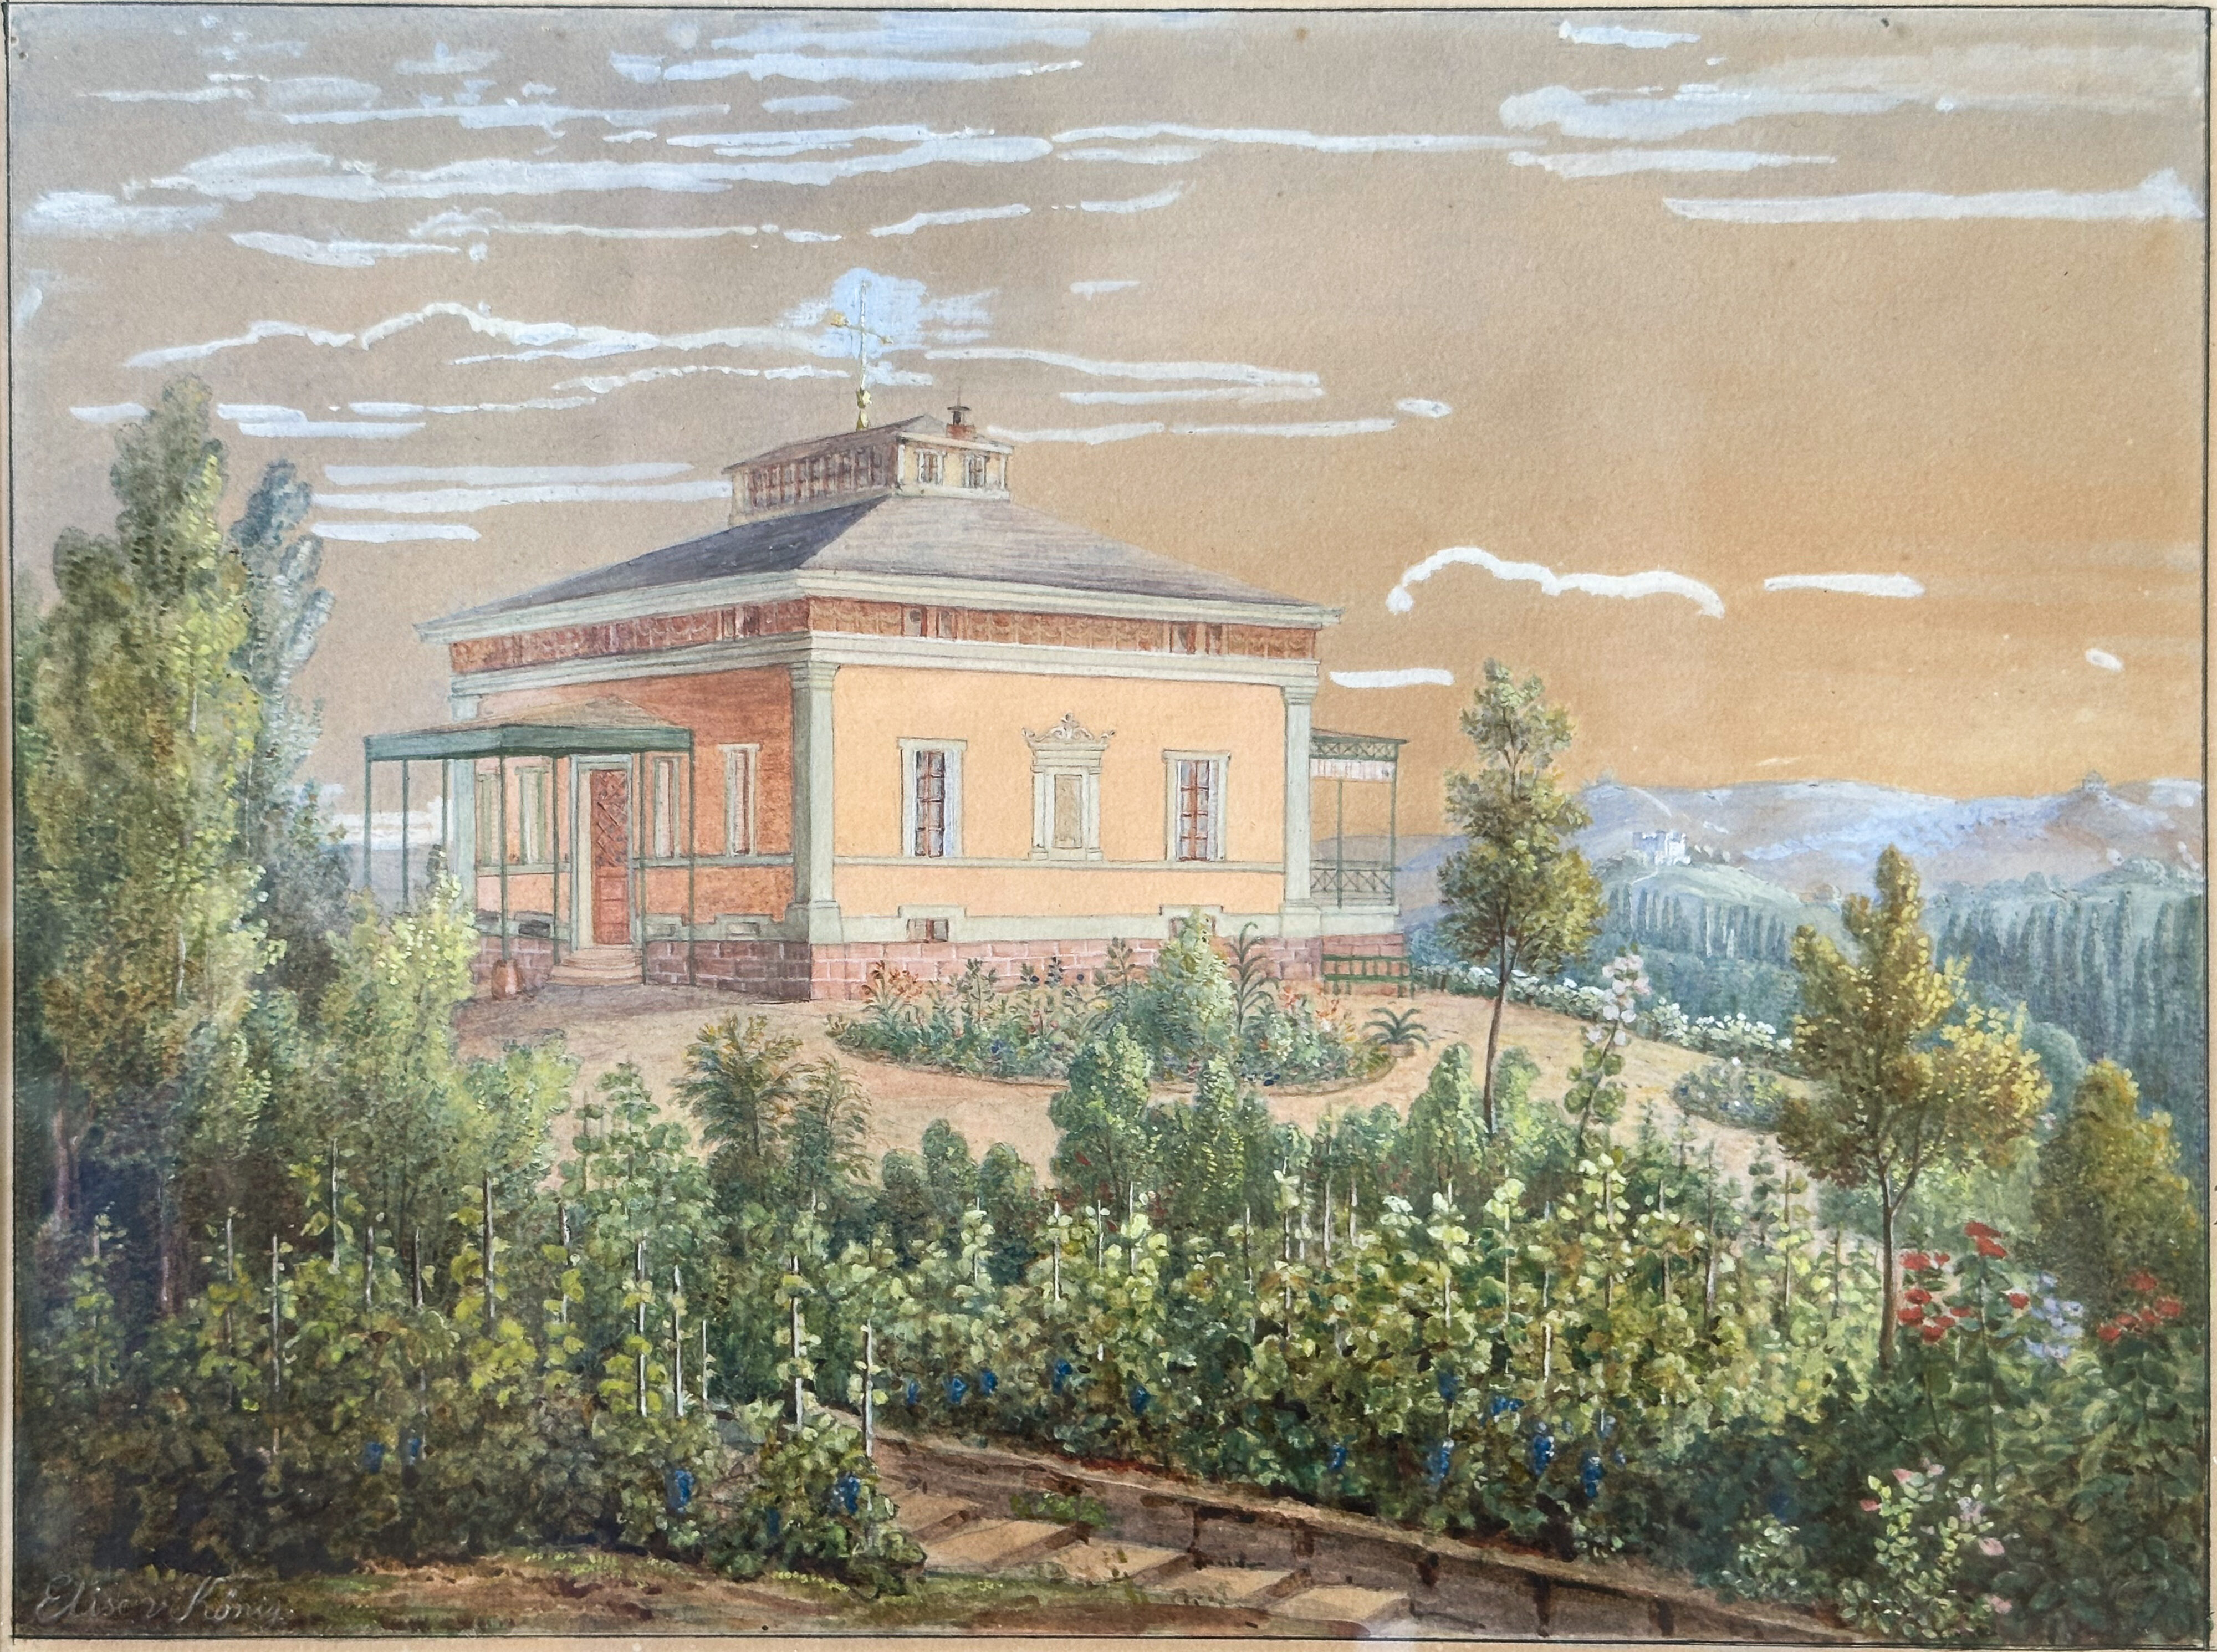 Schloss Fachsenfeld – Landhaus Rebenberg II: der Bau, gemalt von der Bauherrin Elise von Koenig